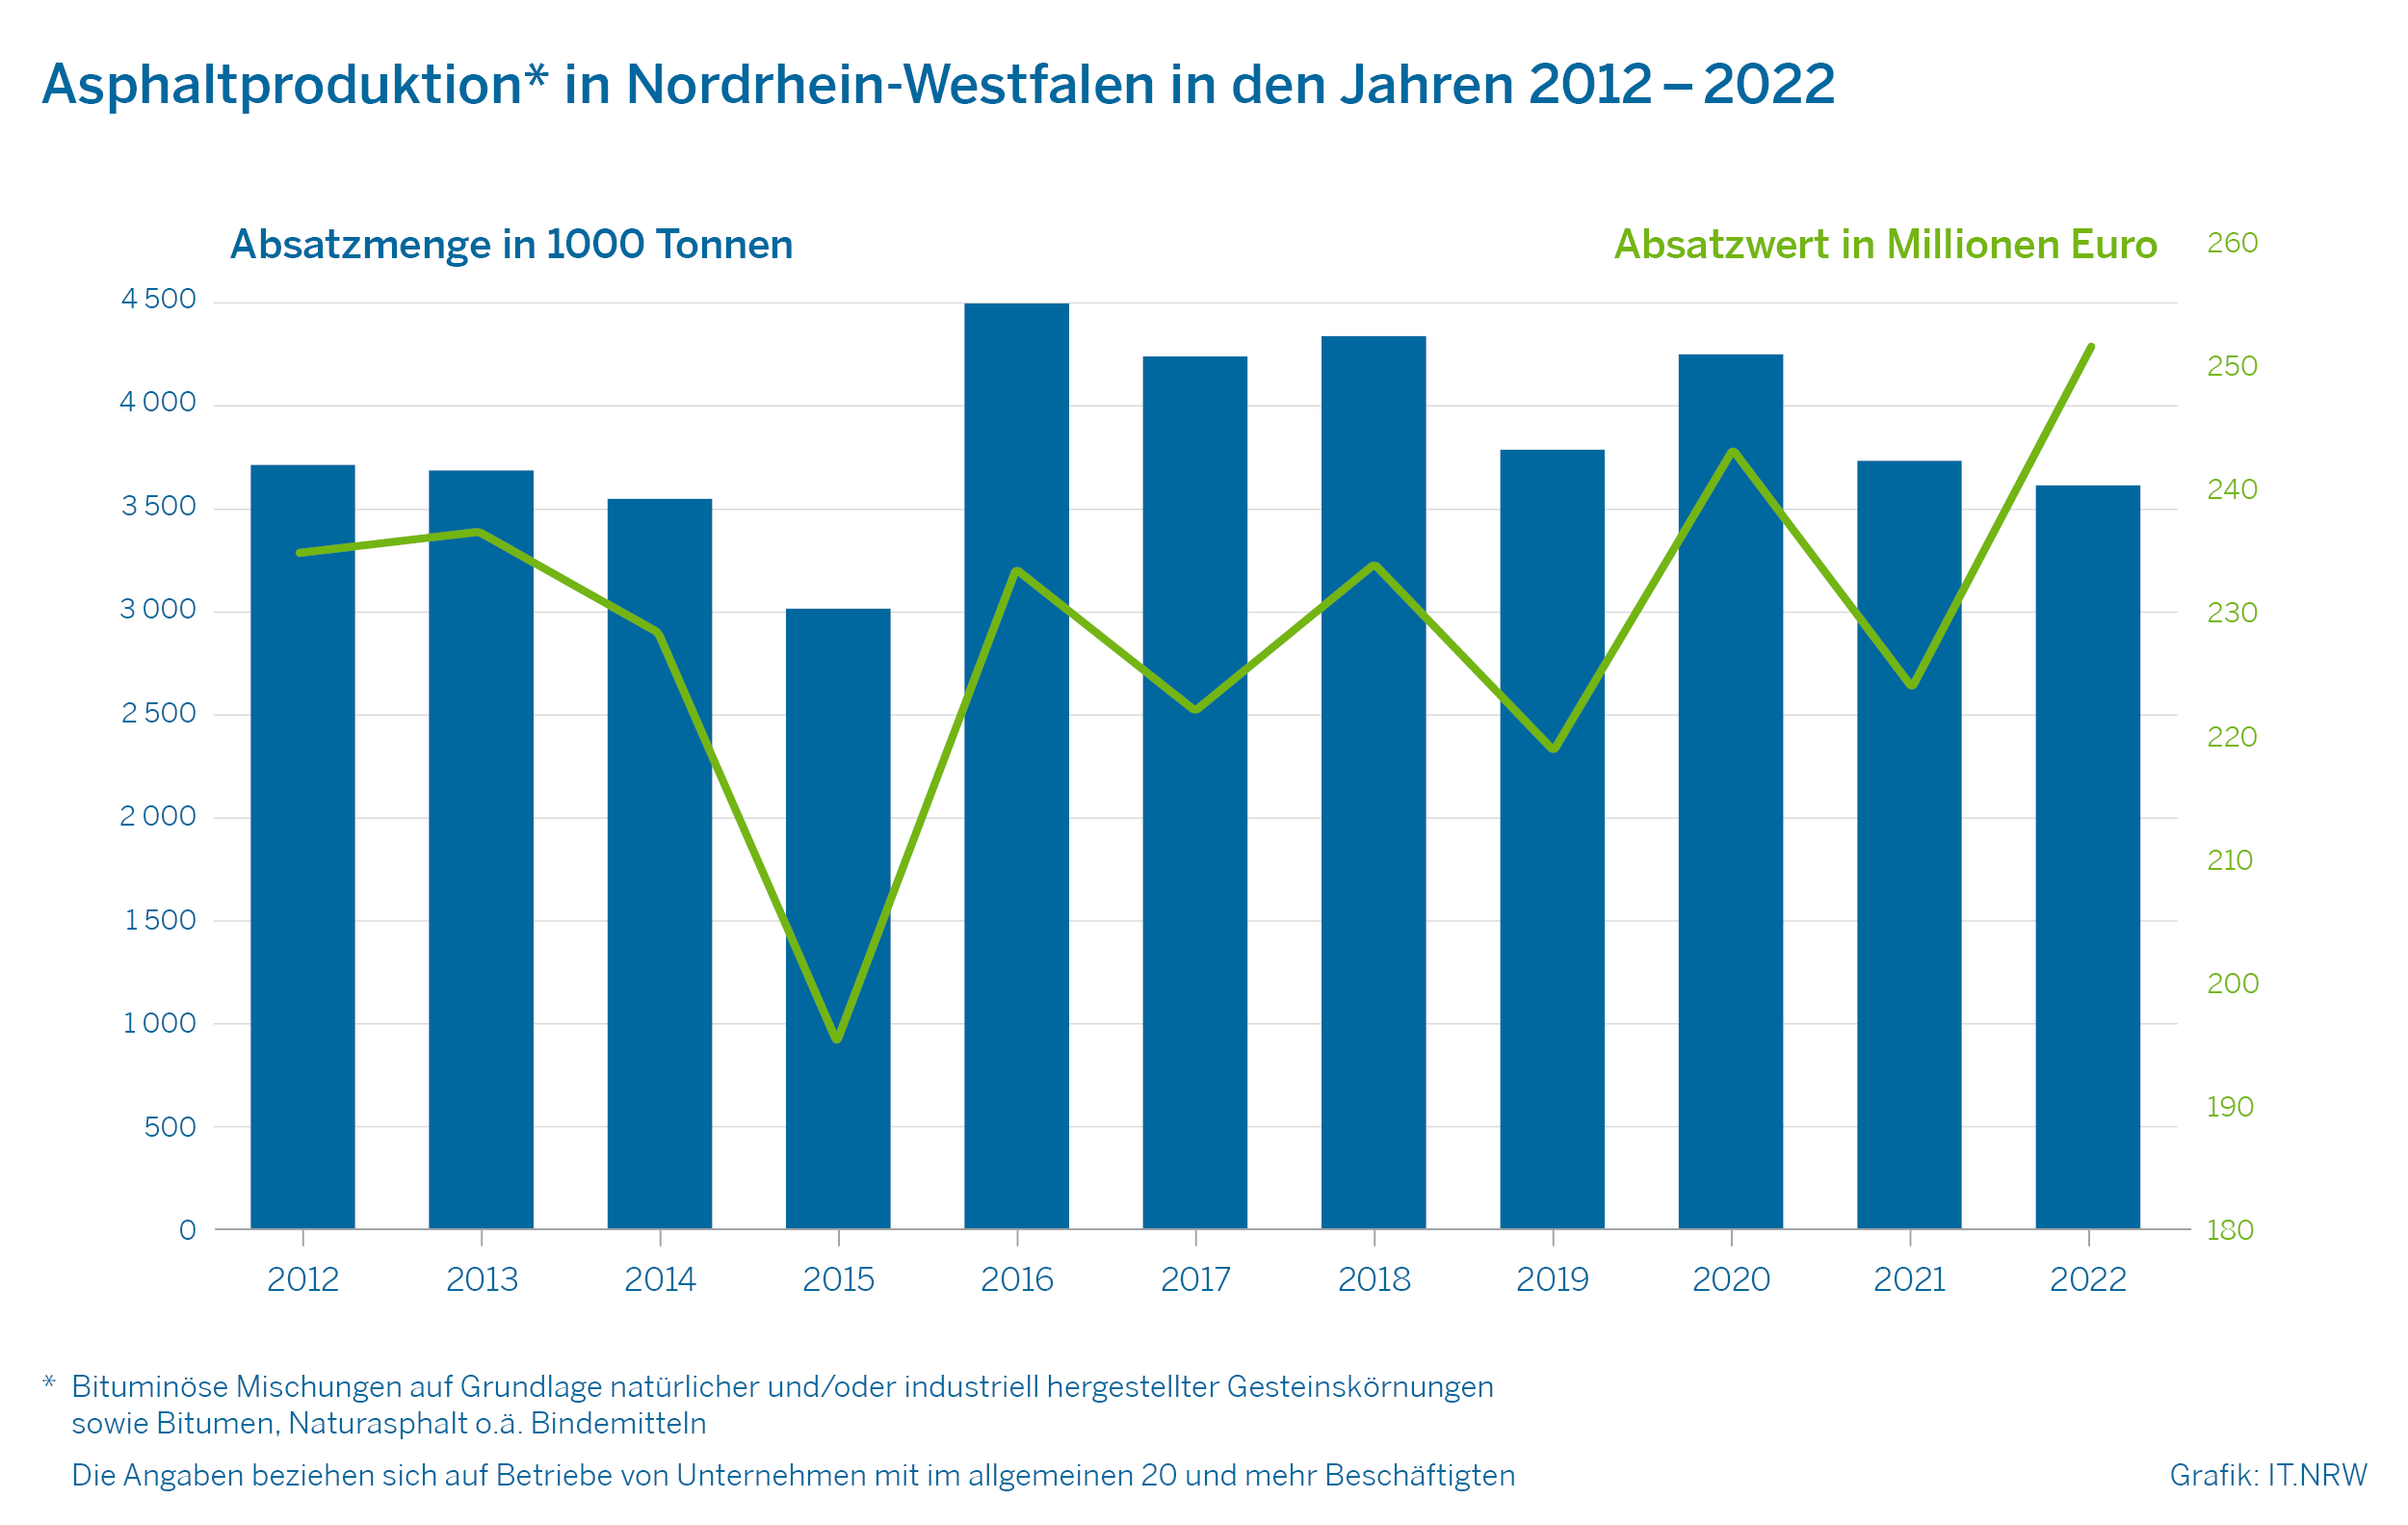 Asphaltproduktion in Nordrhein-Westfalen in den Jahren 2012 - 2022